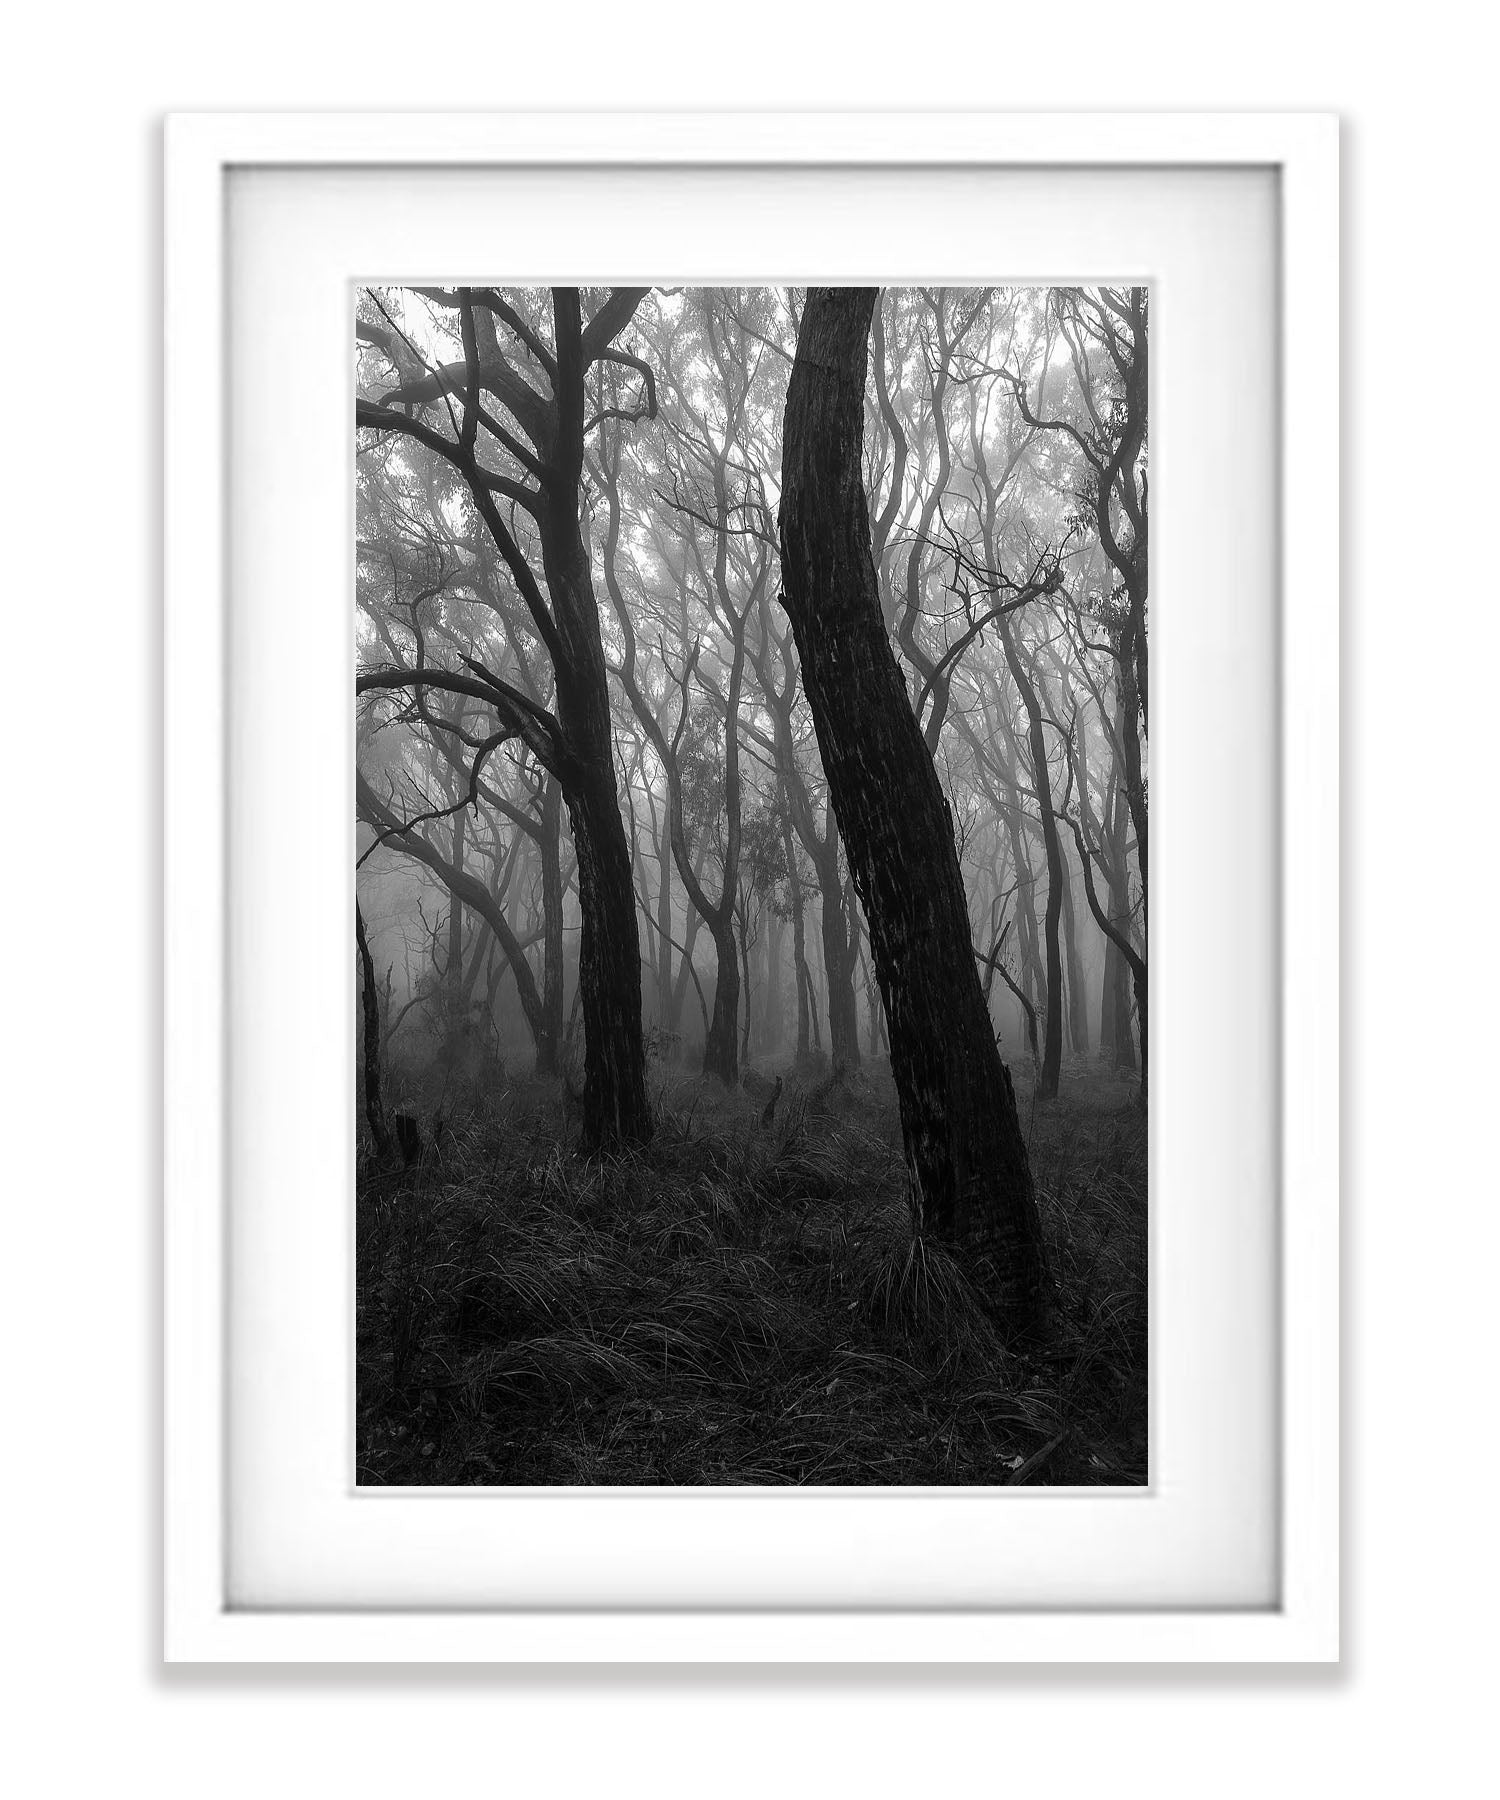 Dancing Trees - Mornington Peninsula, VIC